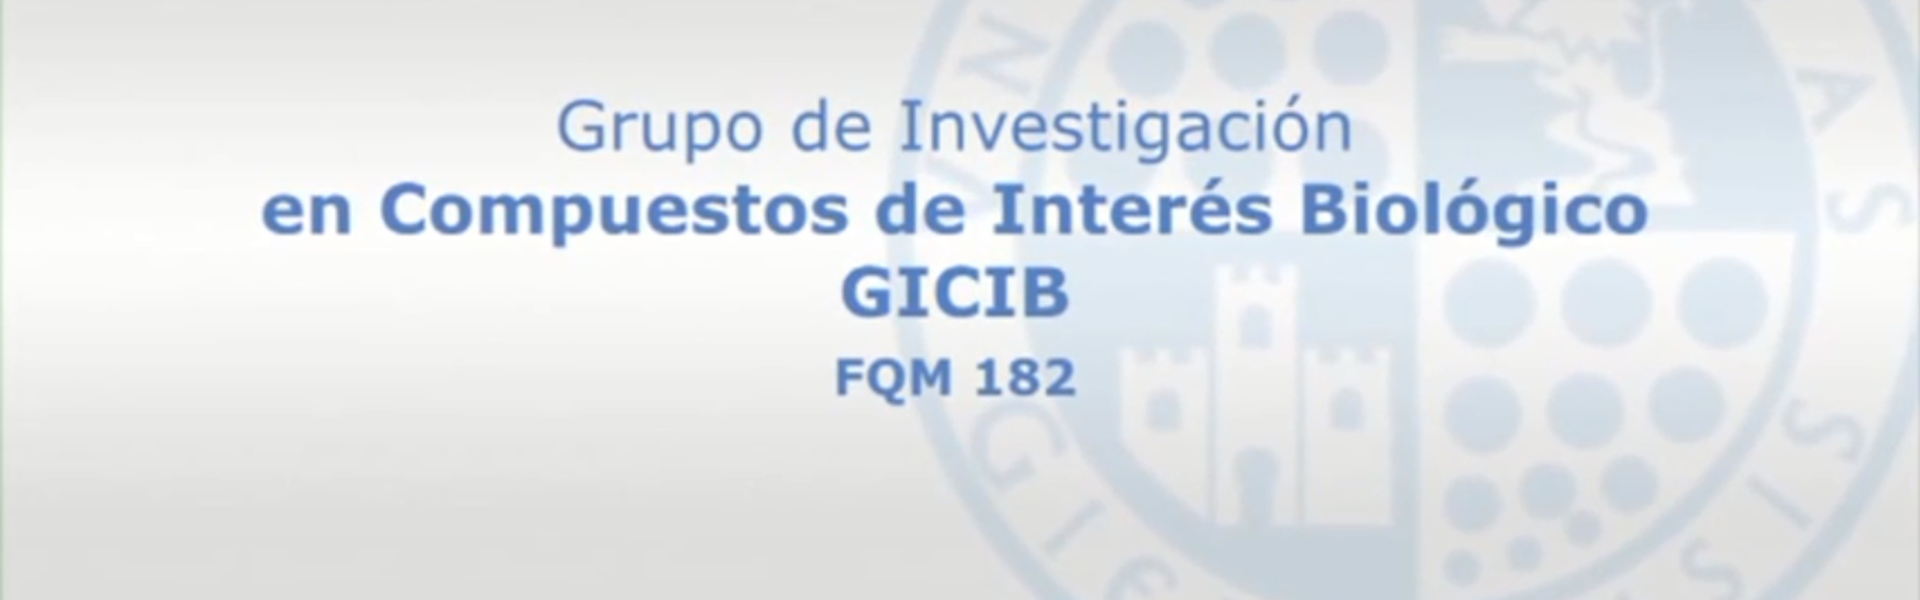 Grupo de Investigación en Compuestos de Interés Biológico (GICIB)